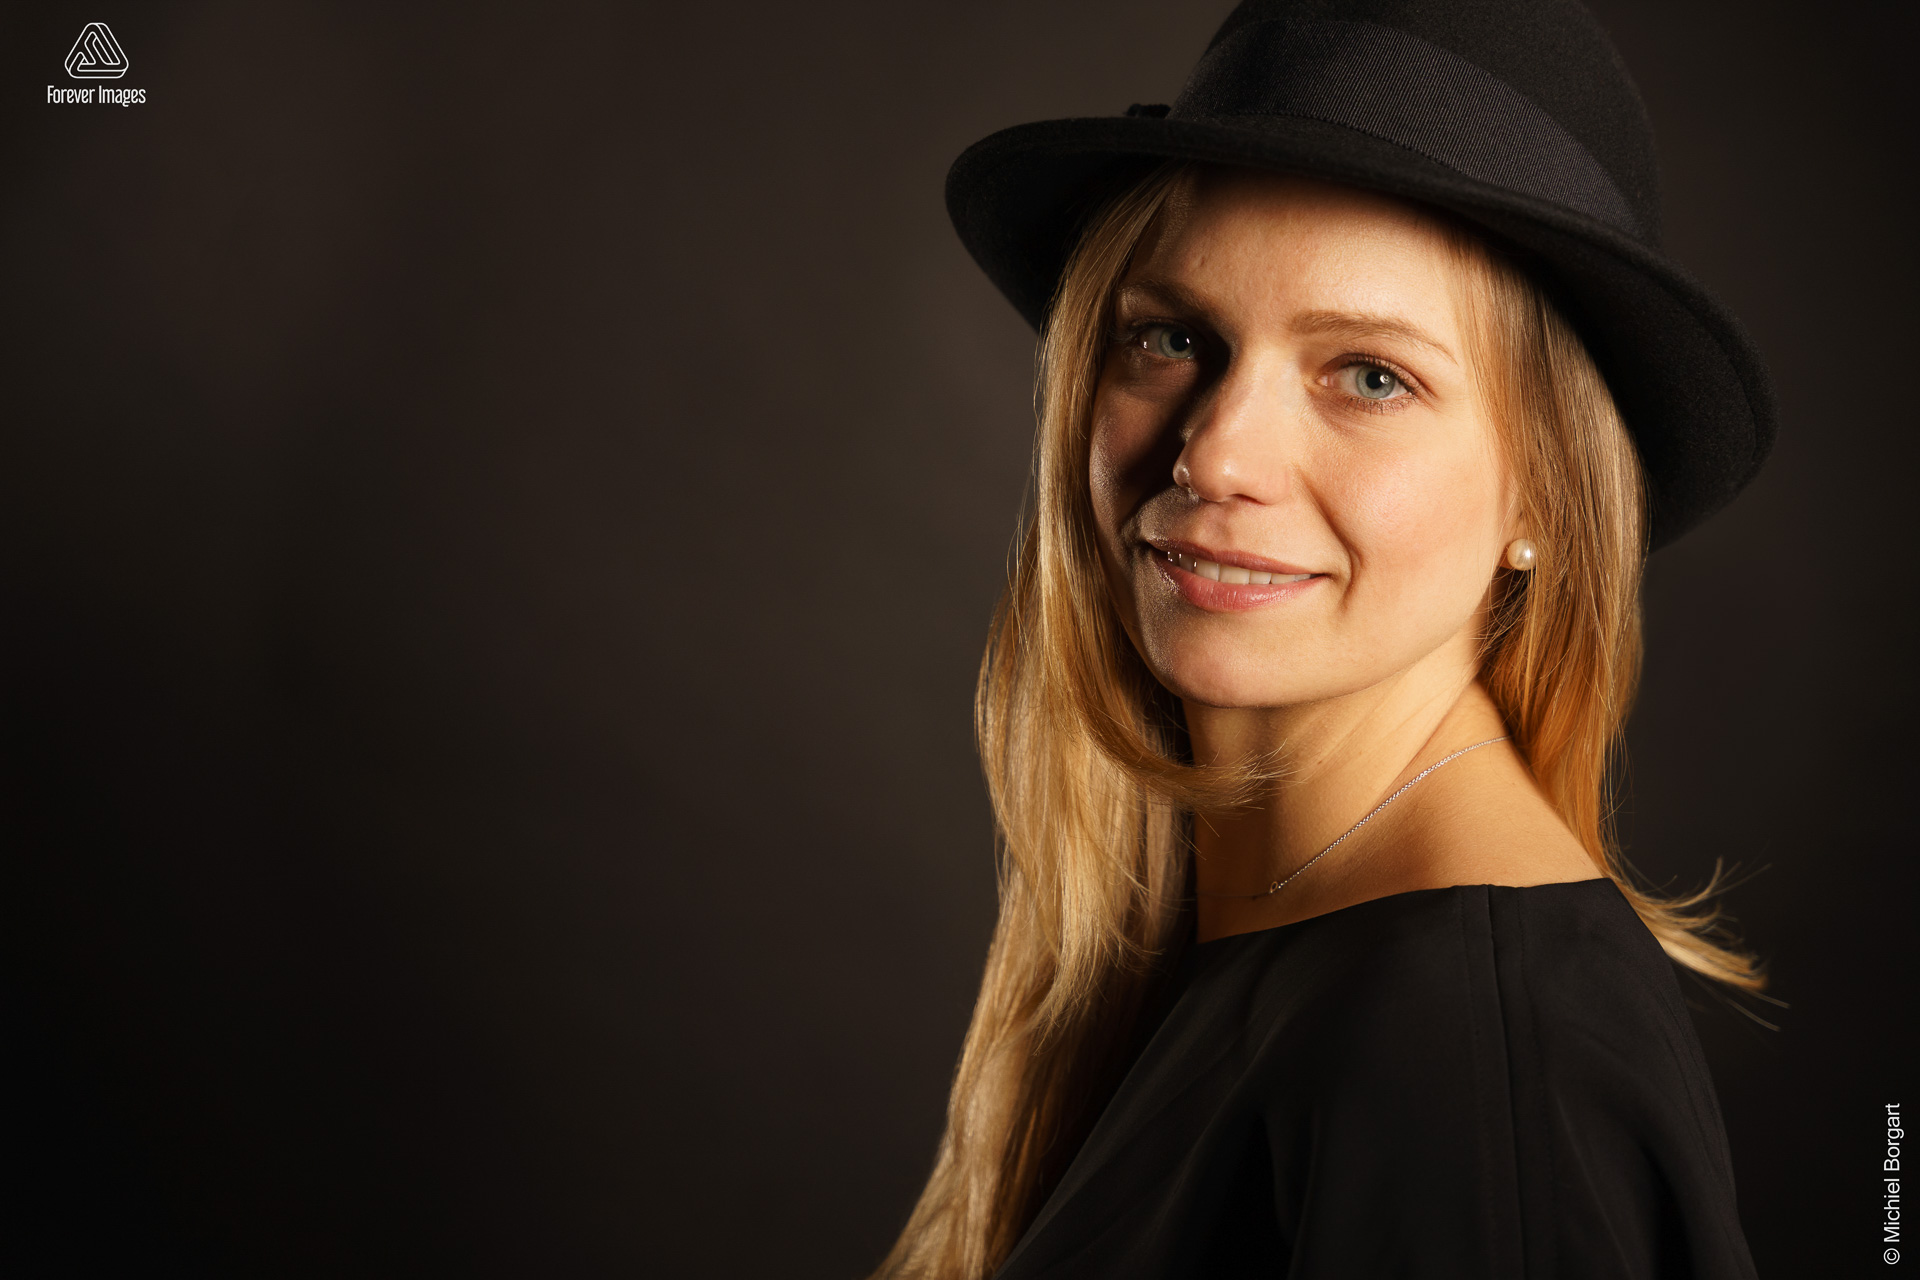 Portrait photo young lady blond hair black dress with black hat | Fanziska | Portrait Photographer Michiel Borgart - Forever Images.